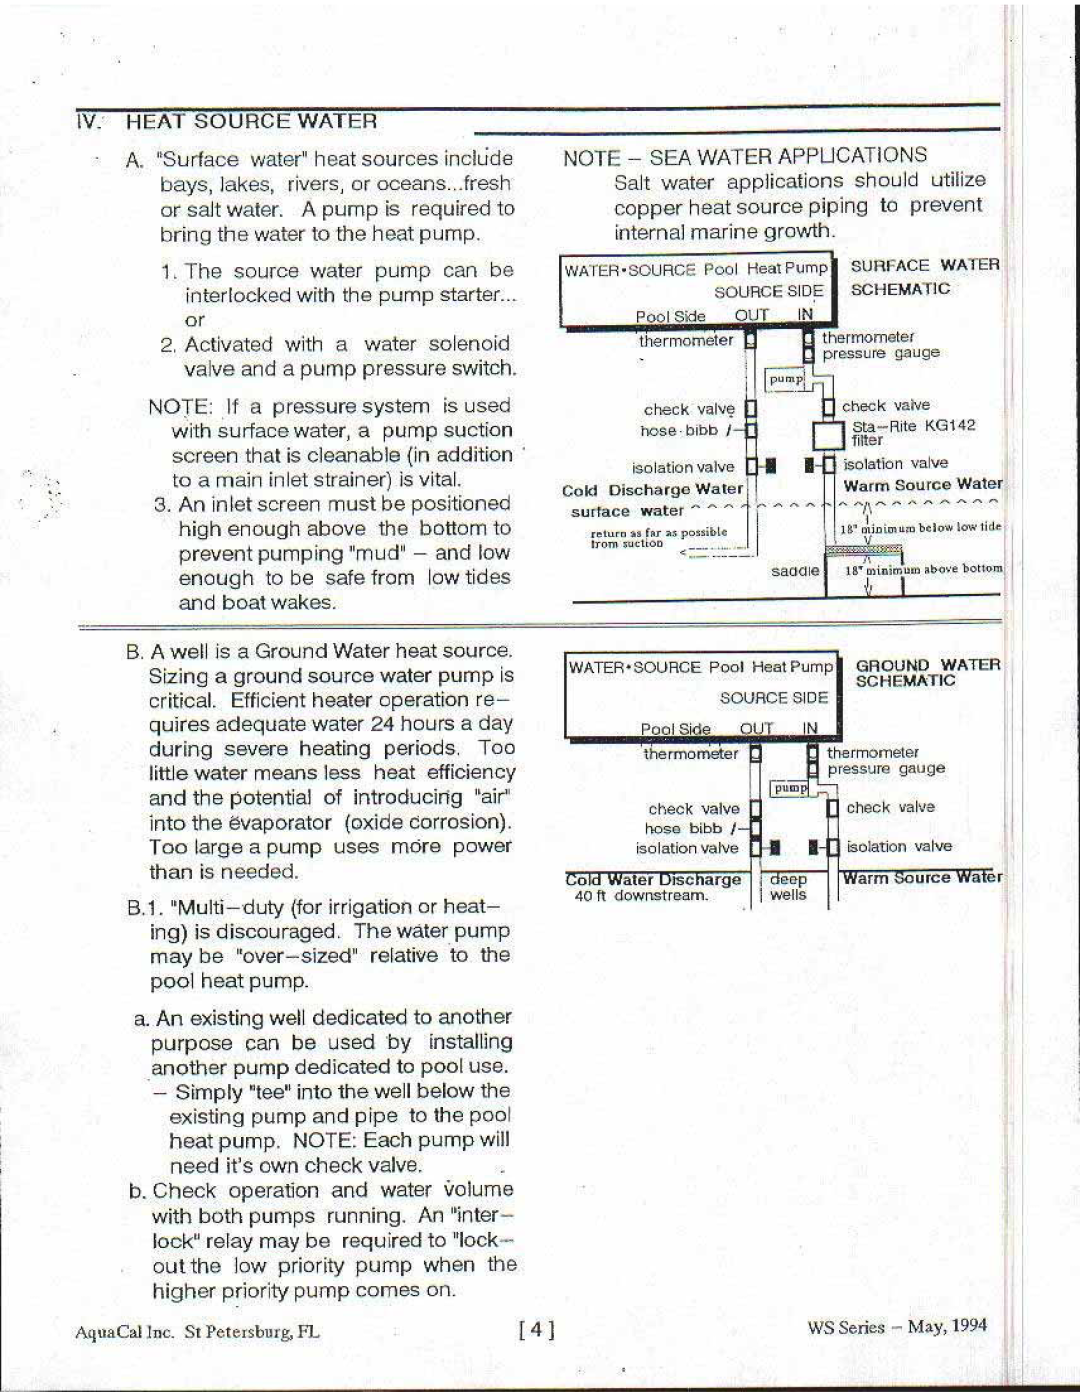 Aquacal LTP0024 manual 